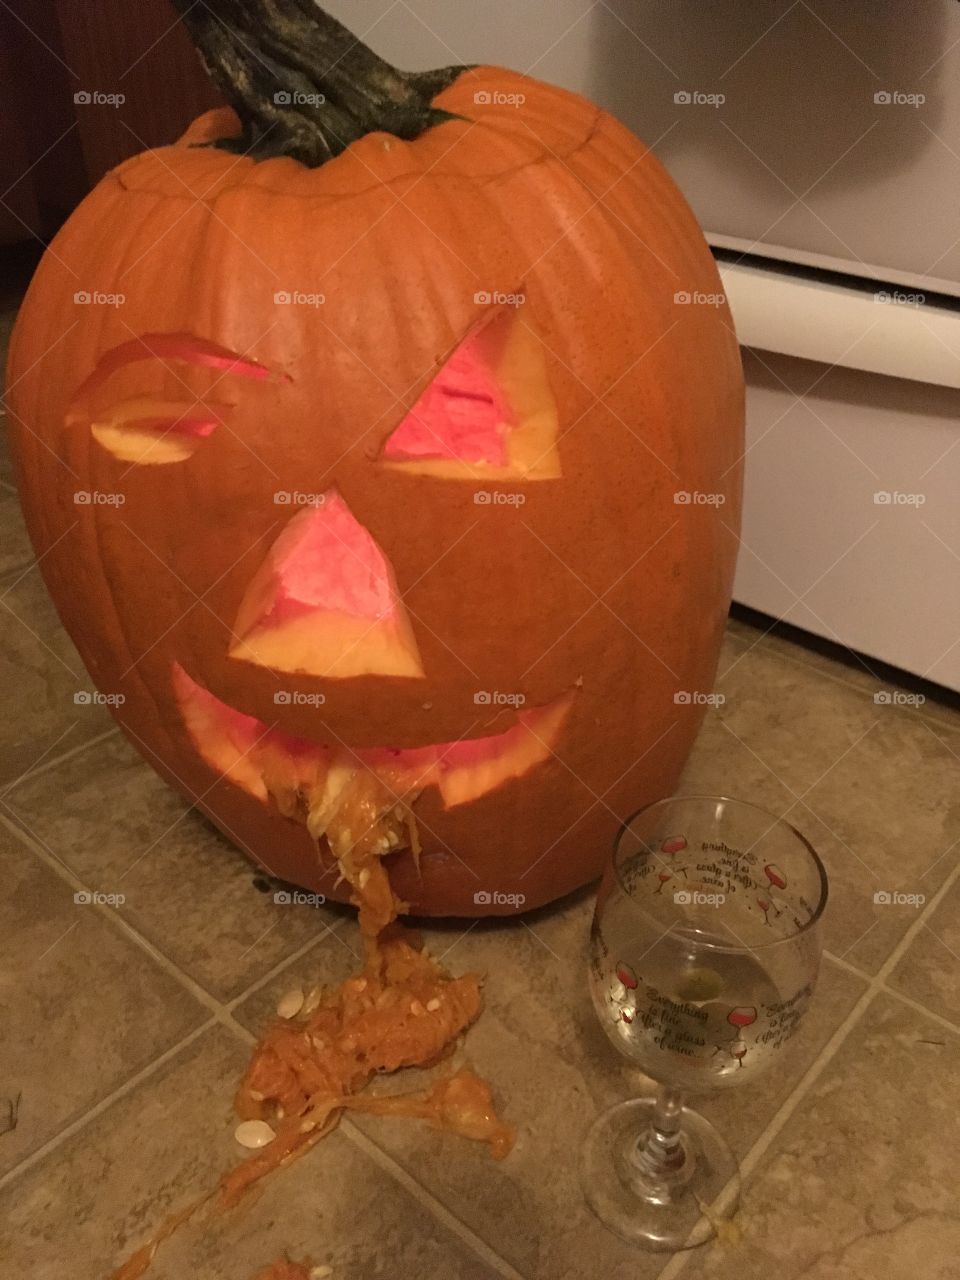 Pumpkin had too much wine